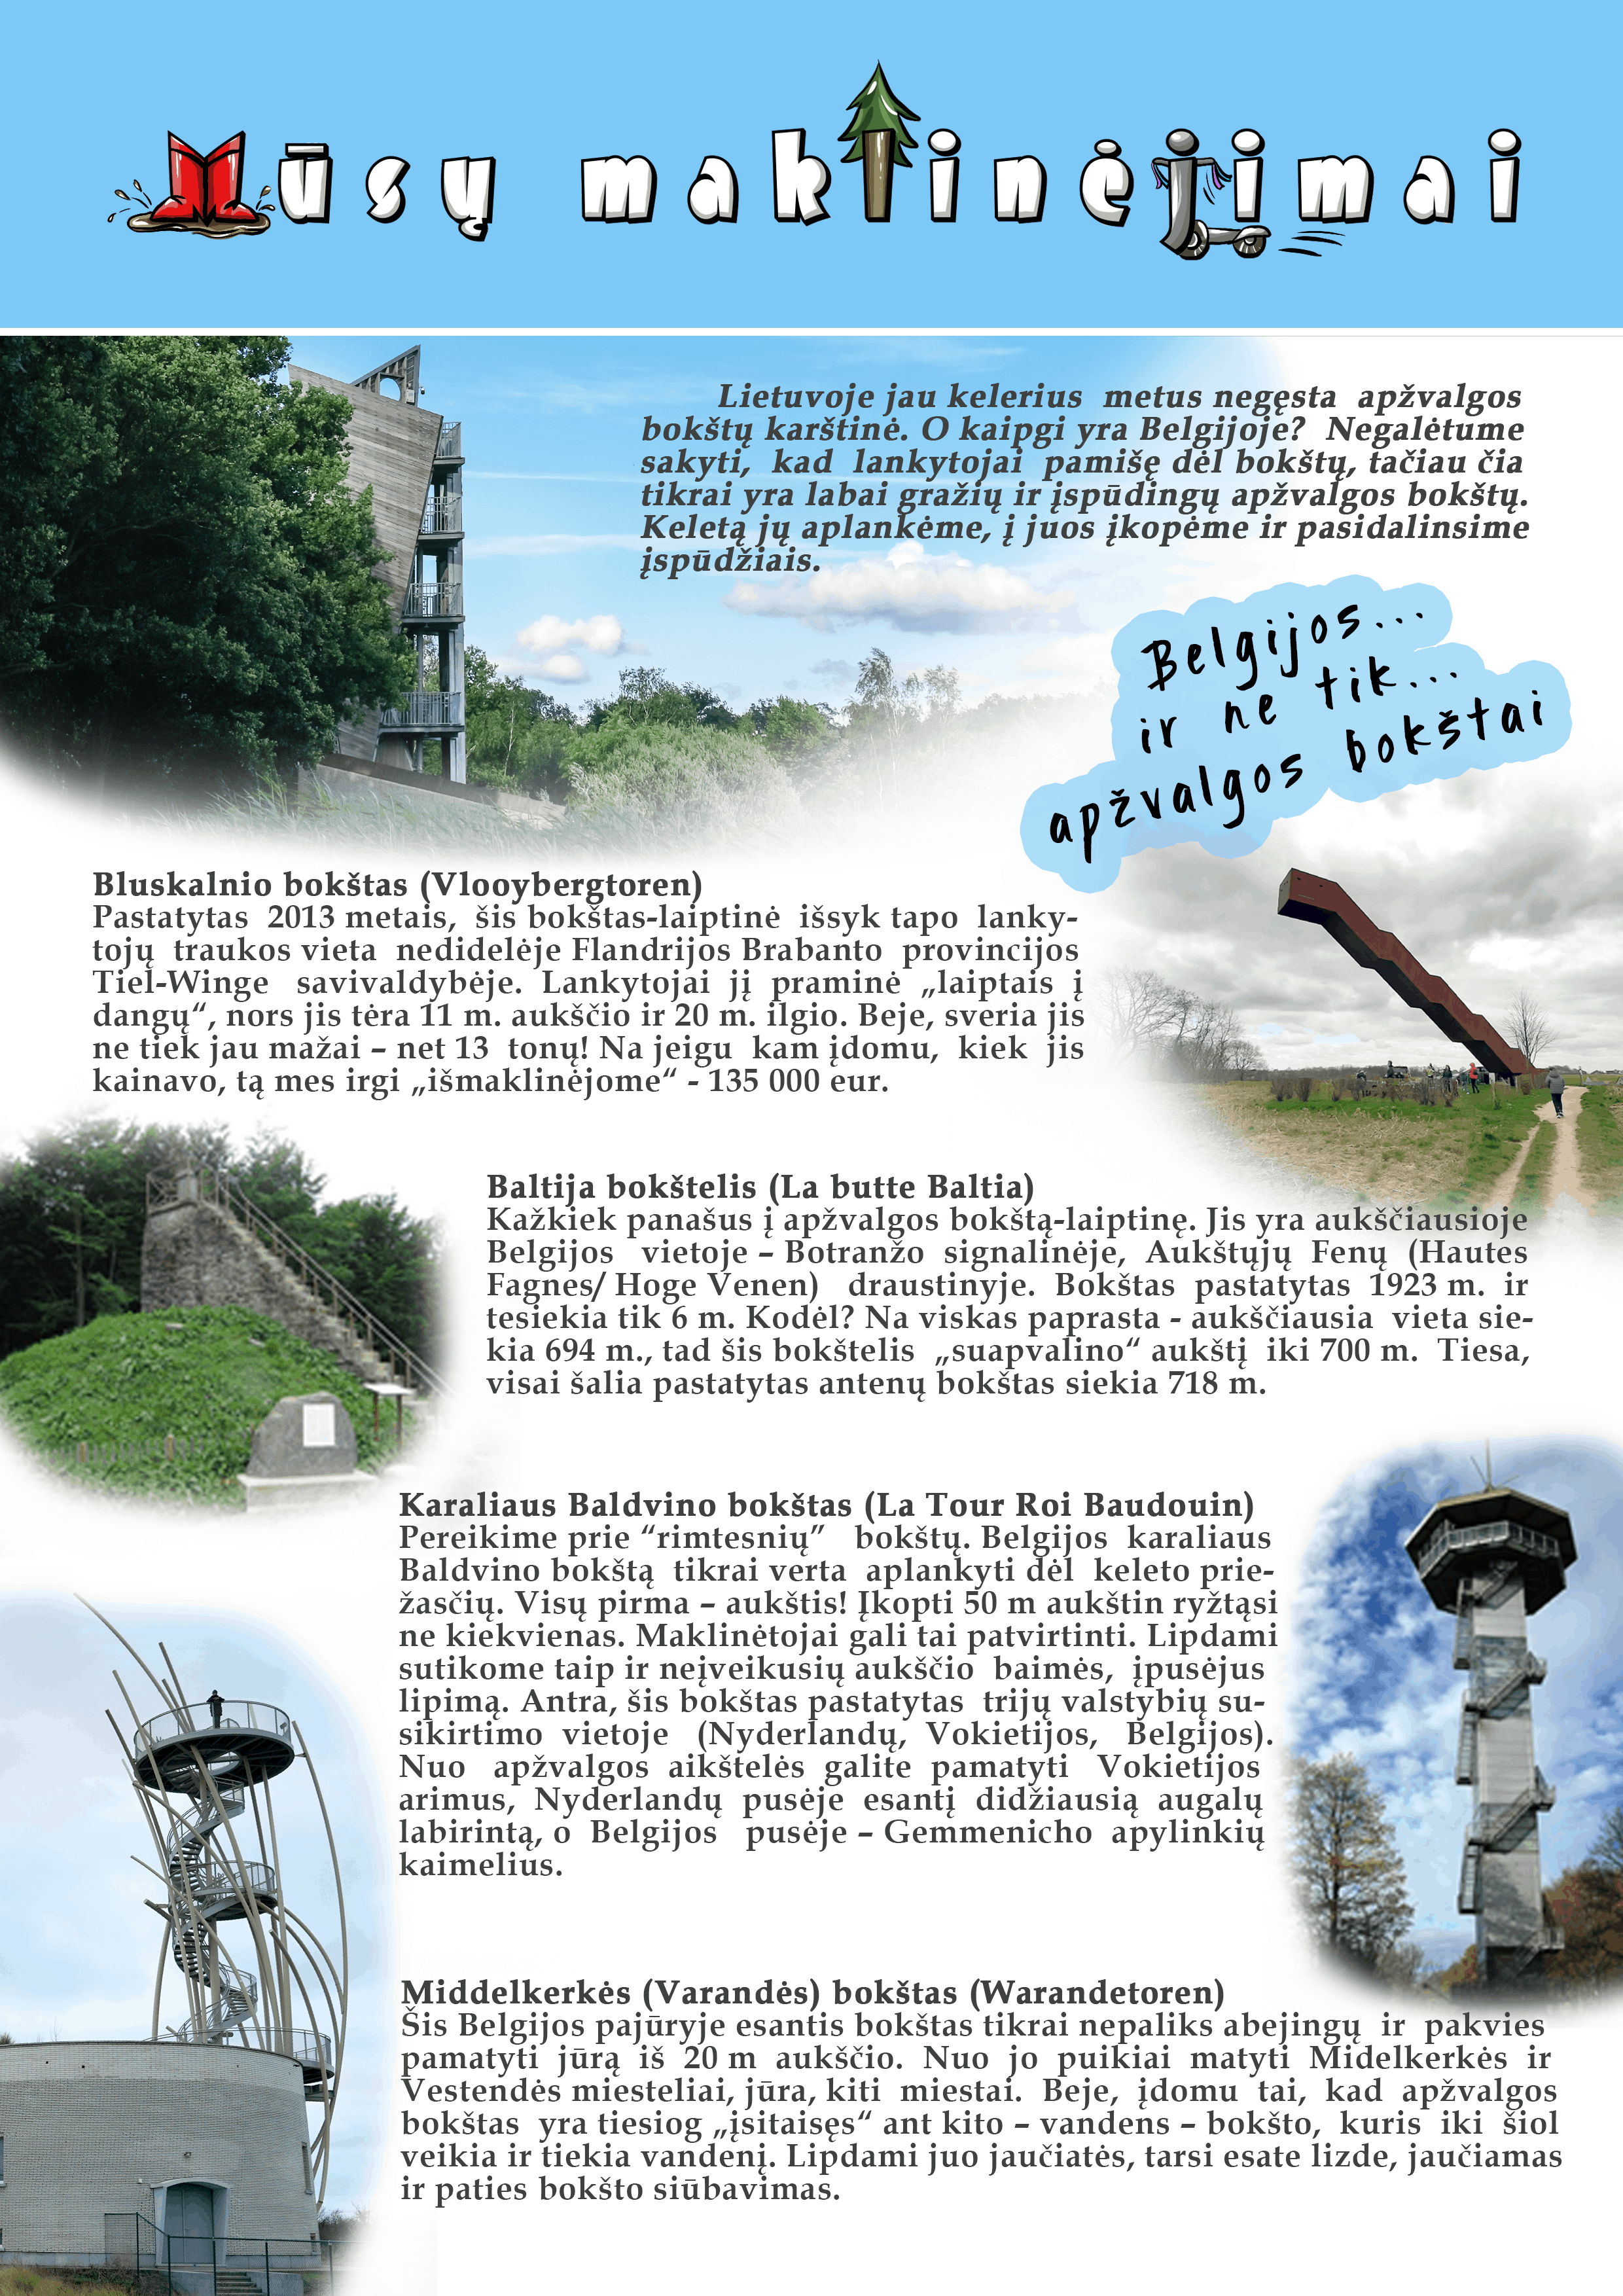 Belgijos (ir ne tik) apžvalgos bokštai